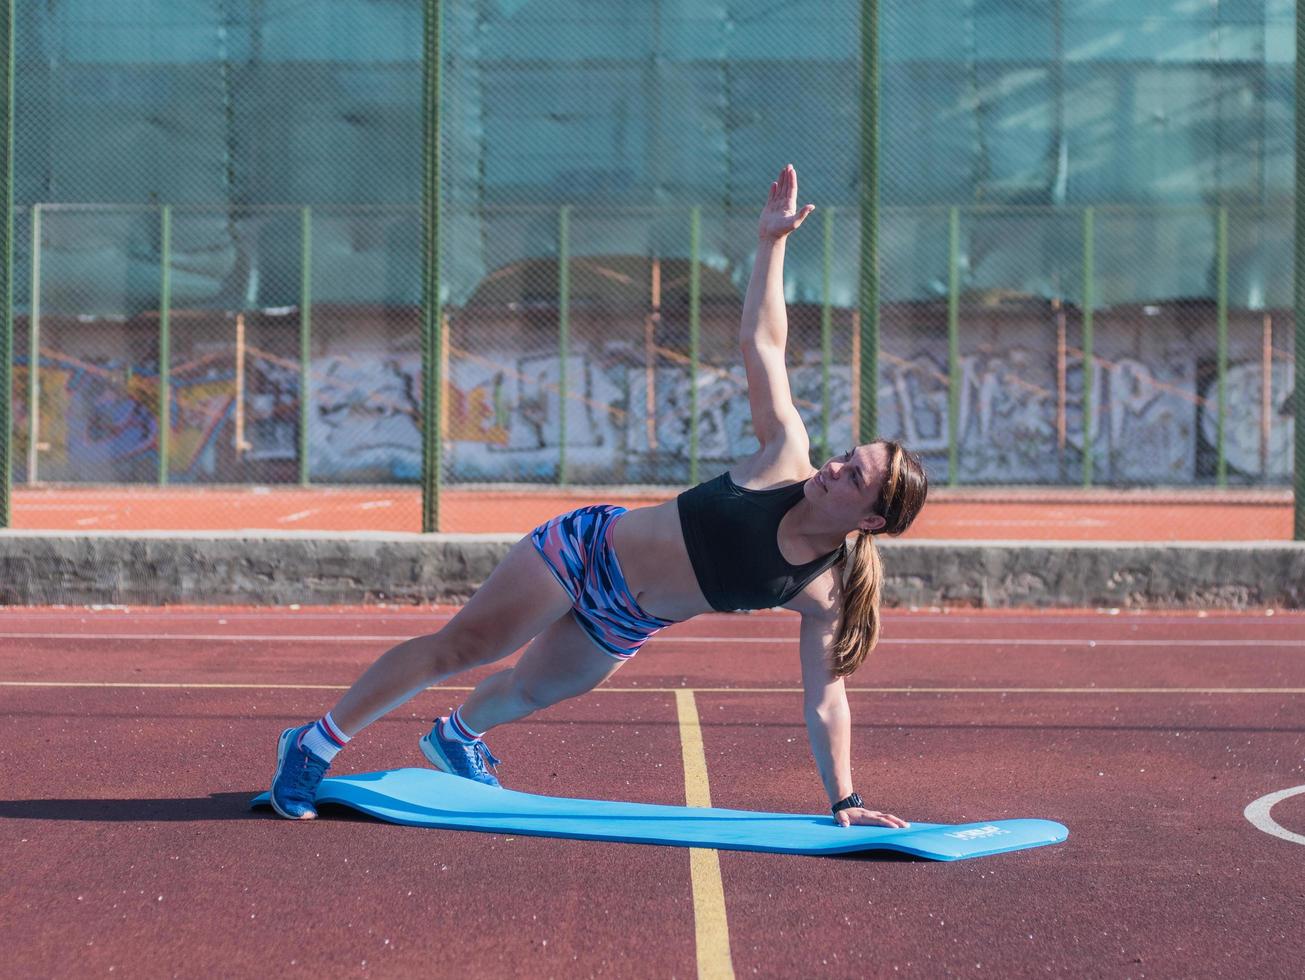 jovem mulher forte treinando ao ar livre no verão, atleta profissional feminina faz exercícios no parque foto